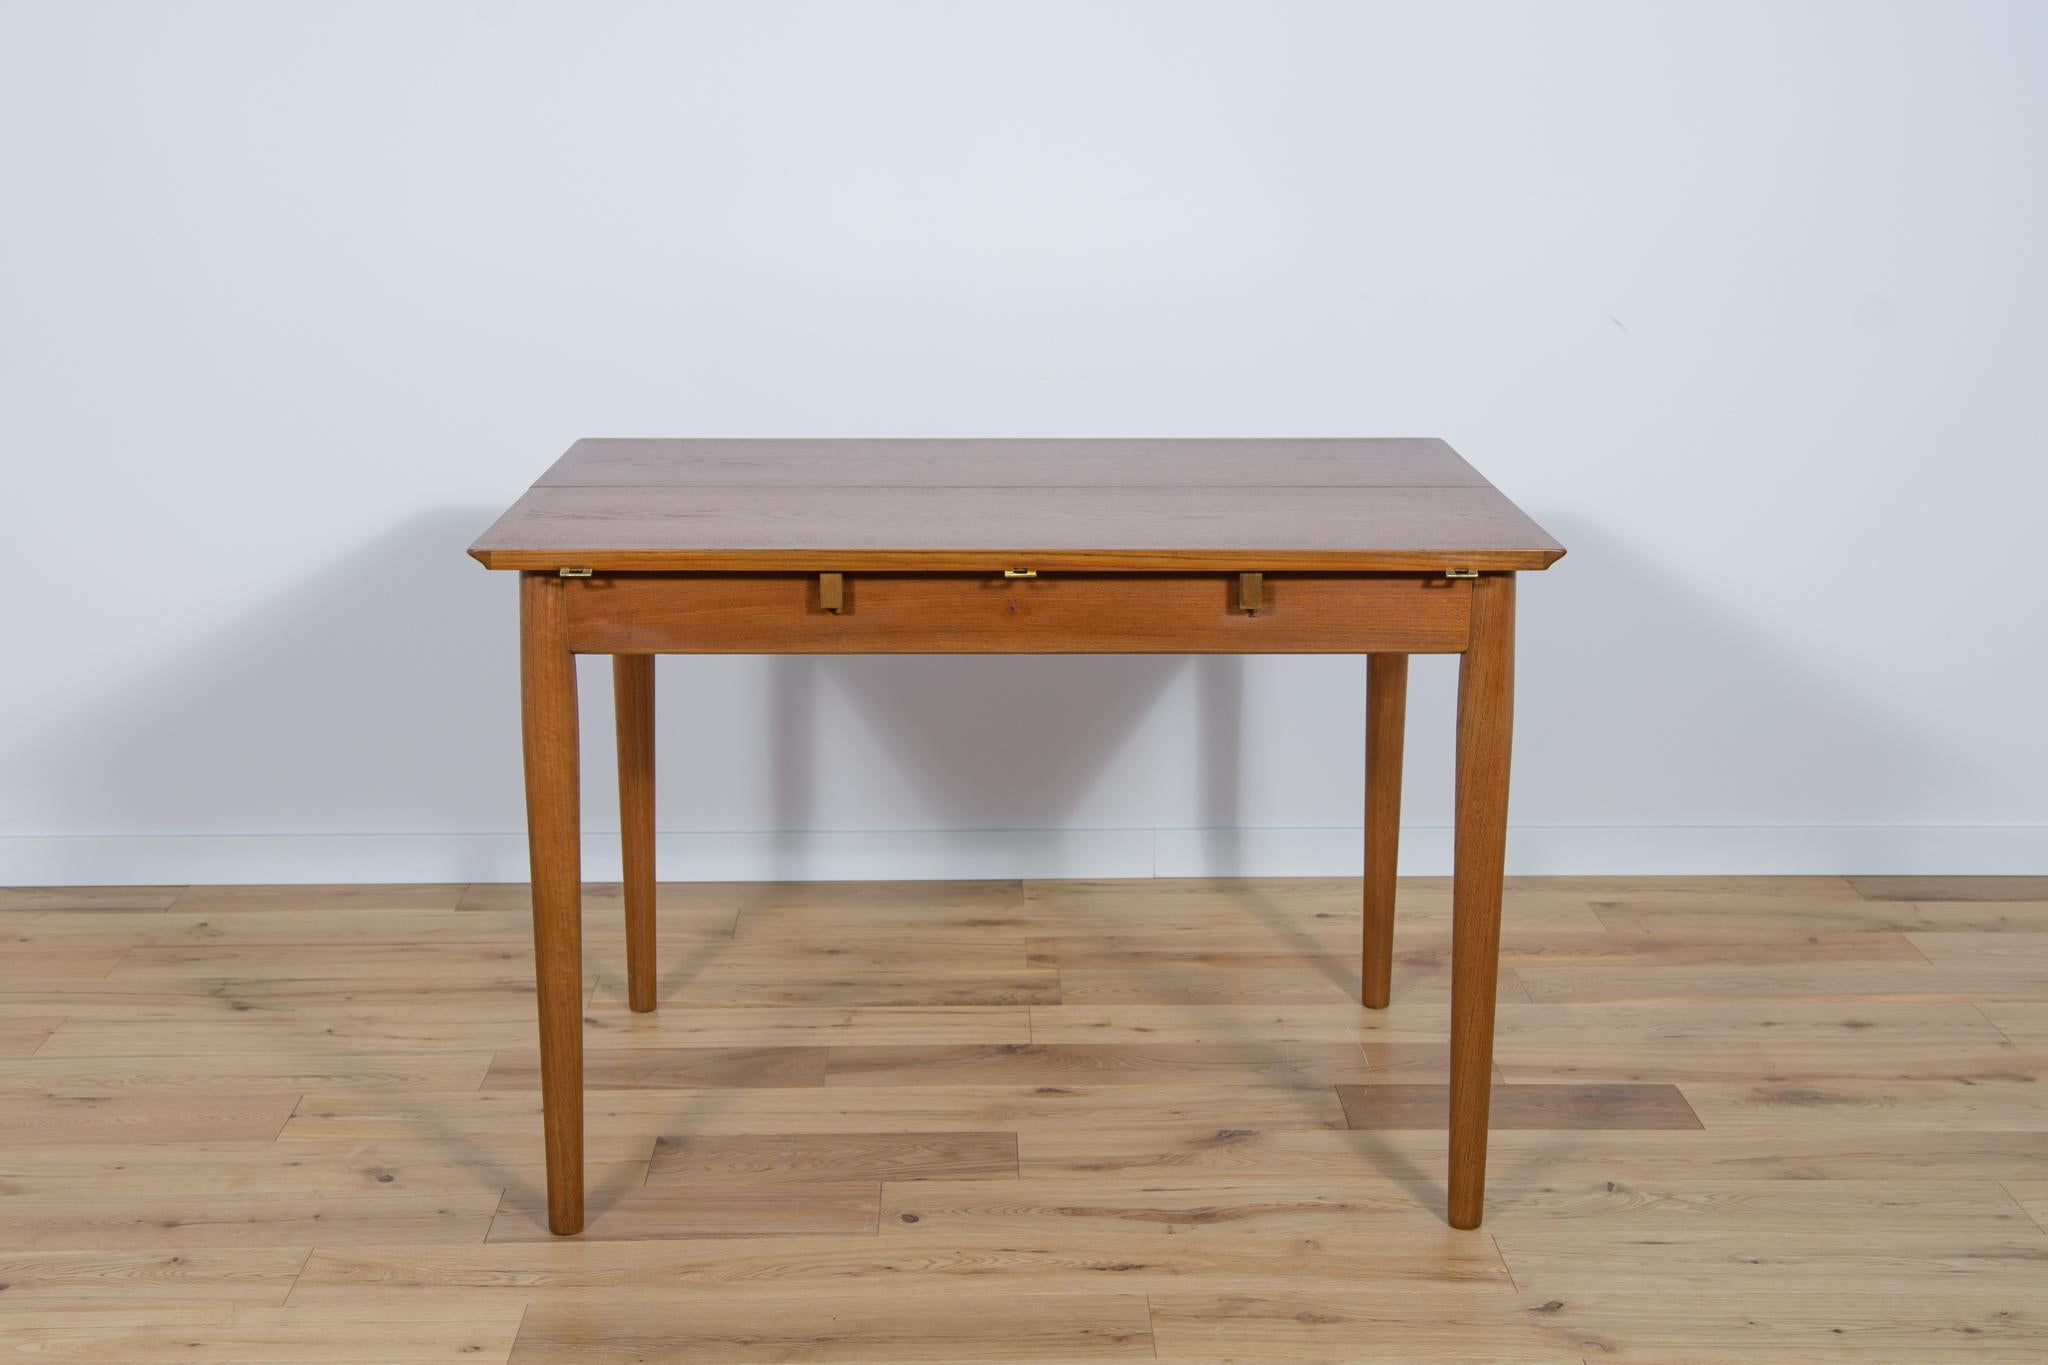 
Cette table à rallonge carrée en bois de teck a été fabriquée au Danemark dans les années 1960. La table a des bords renforcés profilés, ce qui lui confère de l'élégance. La table est après une rénovation complète de la menuiserie, nettoyée de